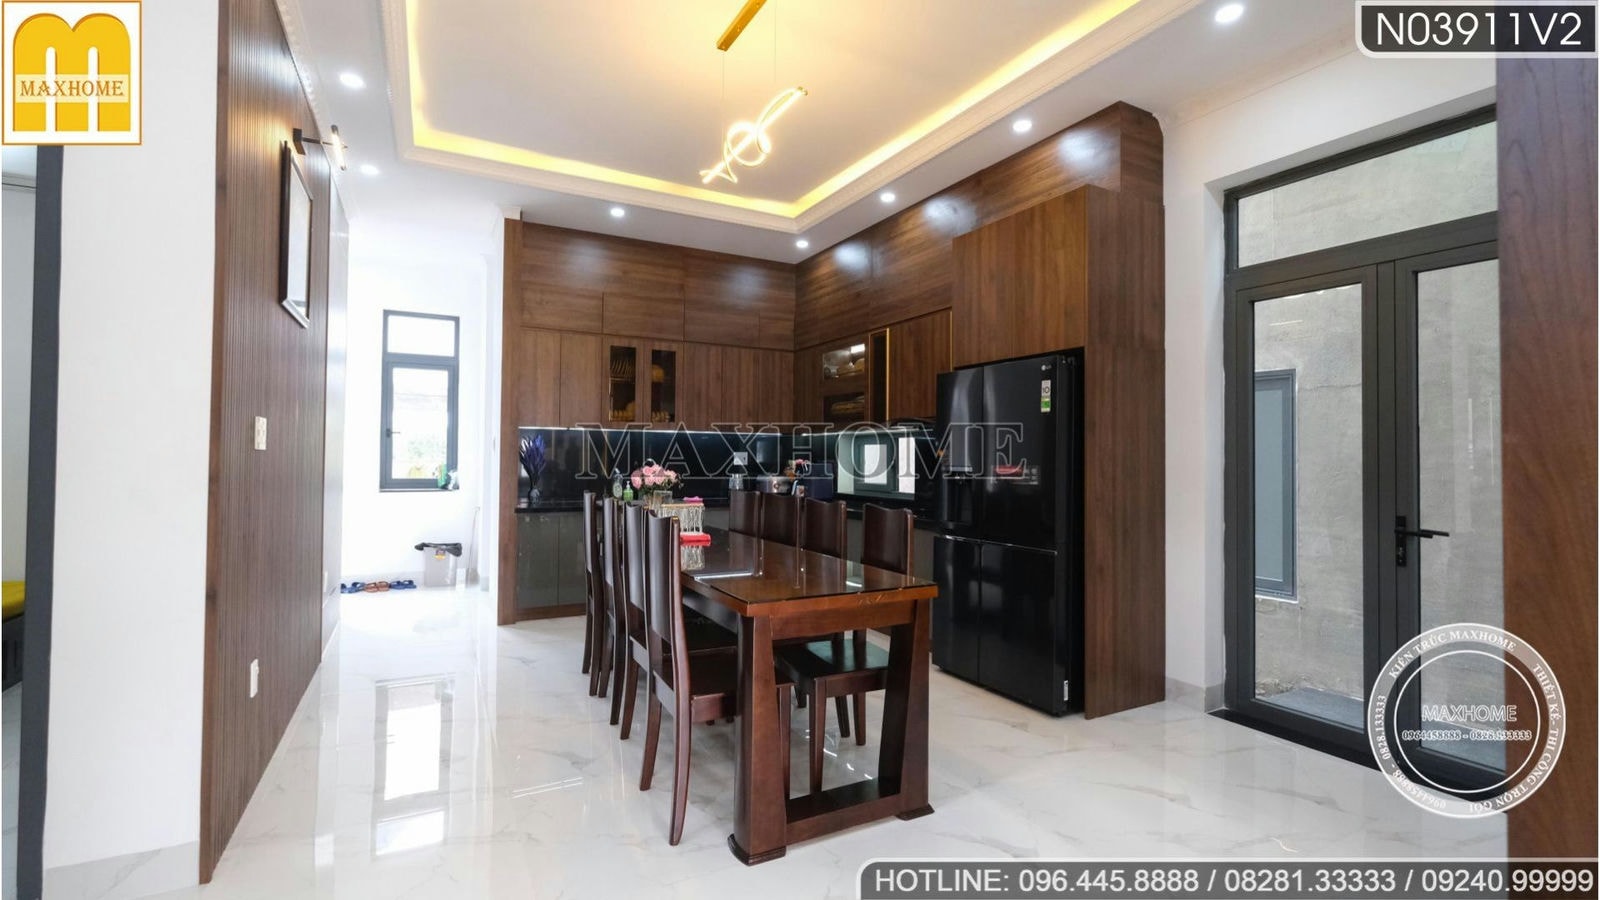 Tham quan thực tế nội thất cực đẹp từ gỗ tại Bình Thuận | MH01452